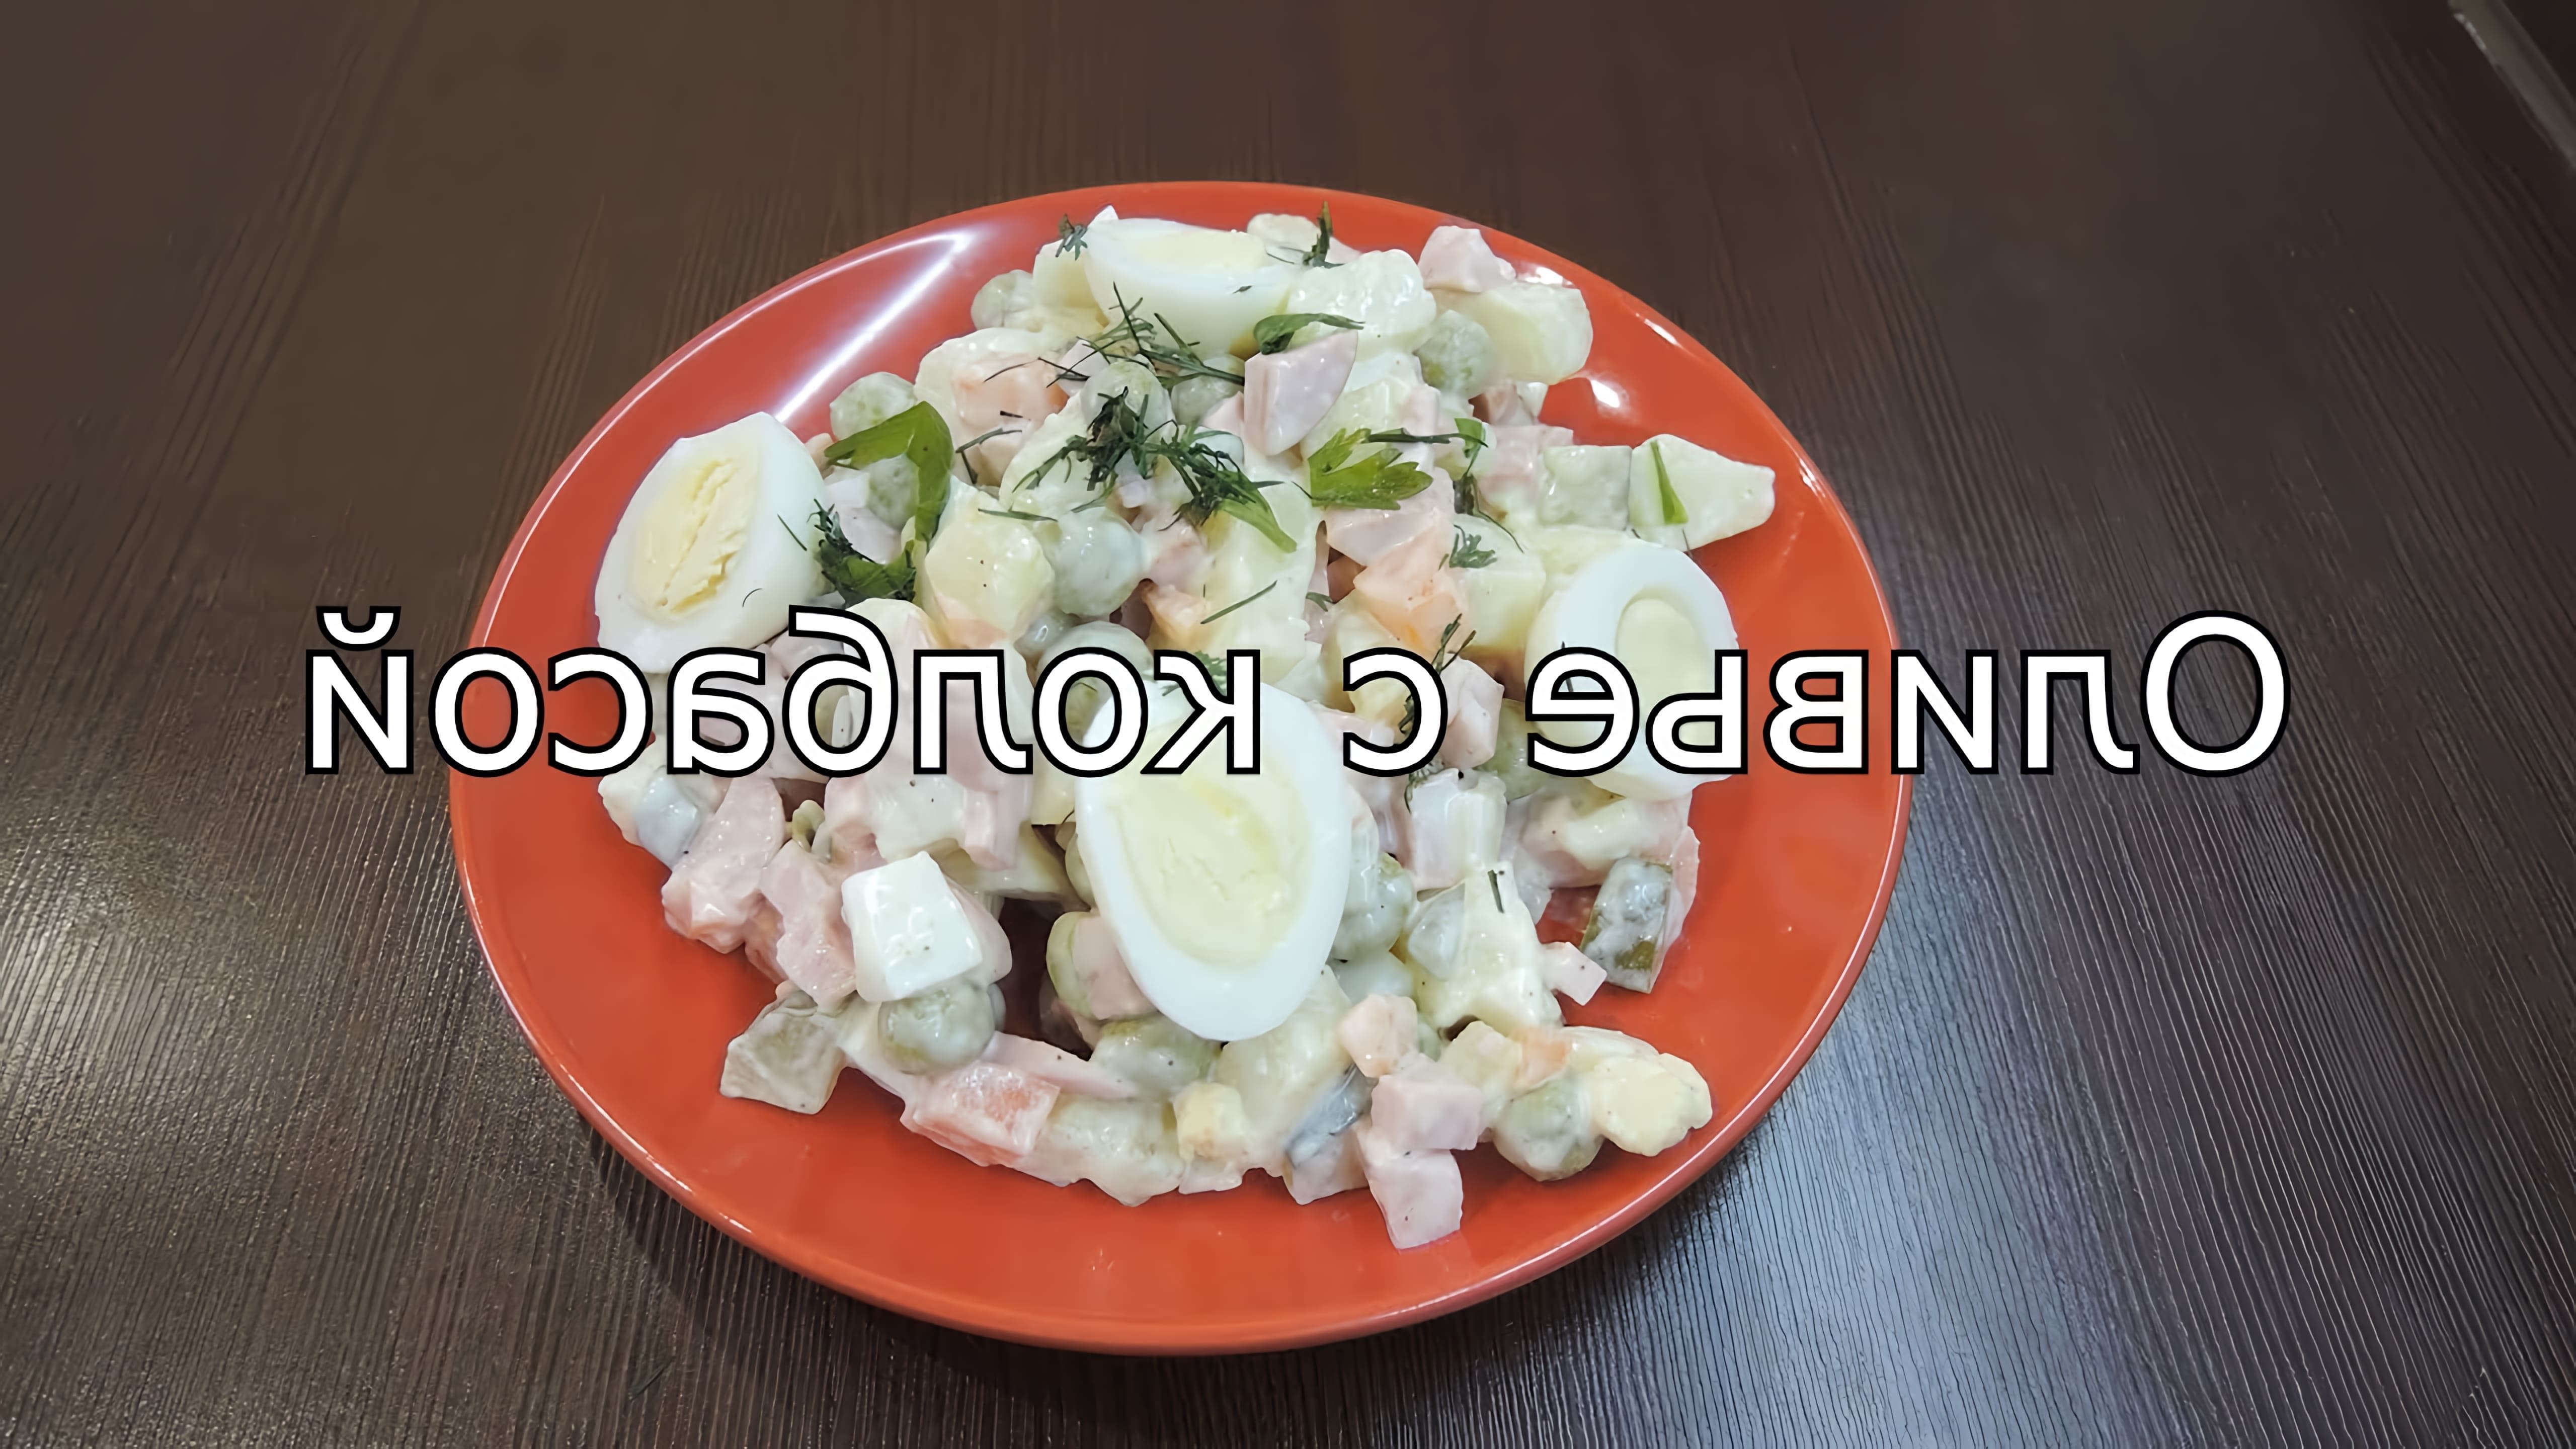 Оливье с колбасой - это видео-ролик, который показывает, как приготовить вкусный и оригинальный салат Оливье с добавлением колбасы